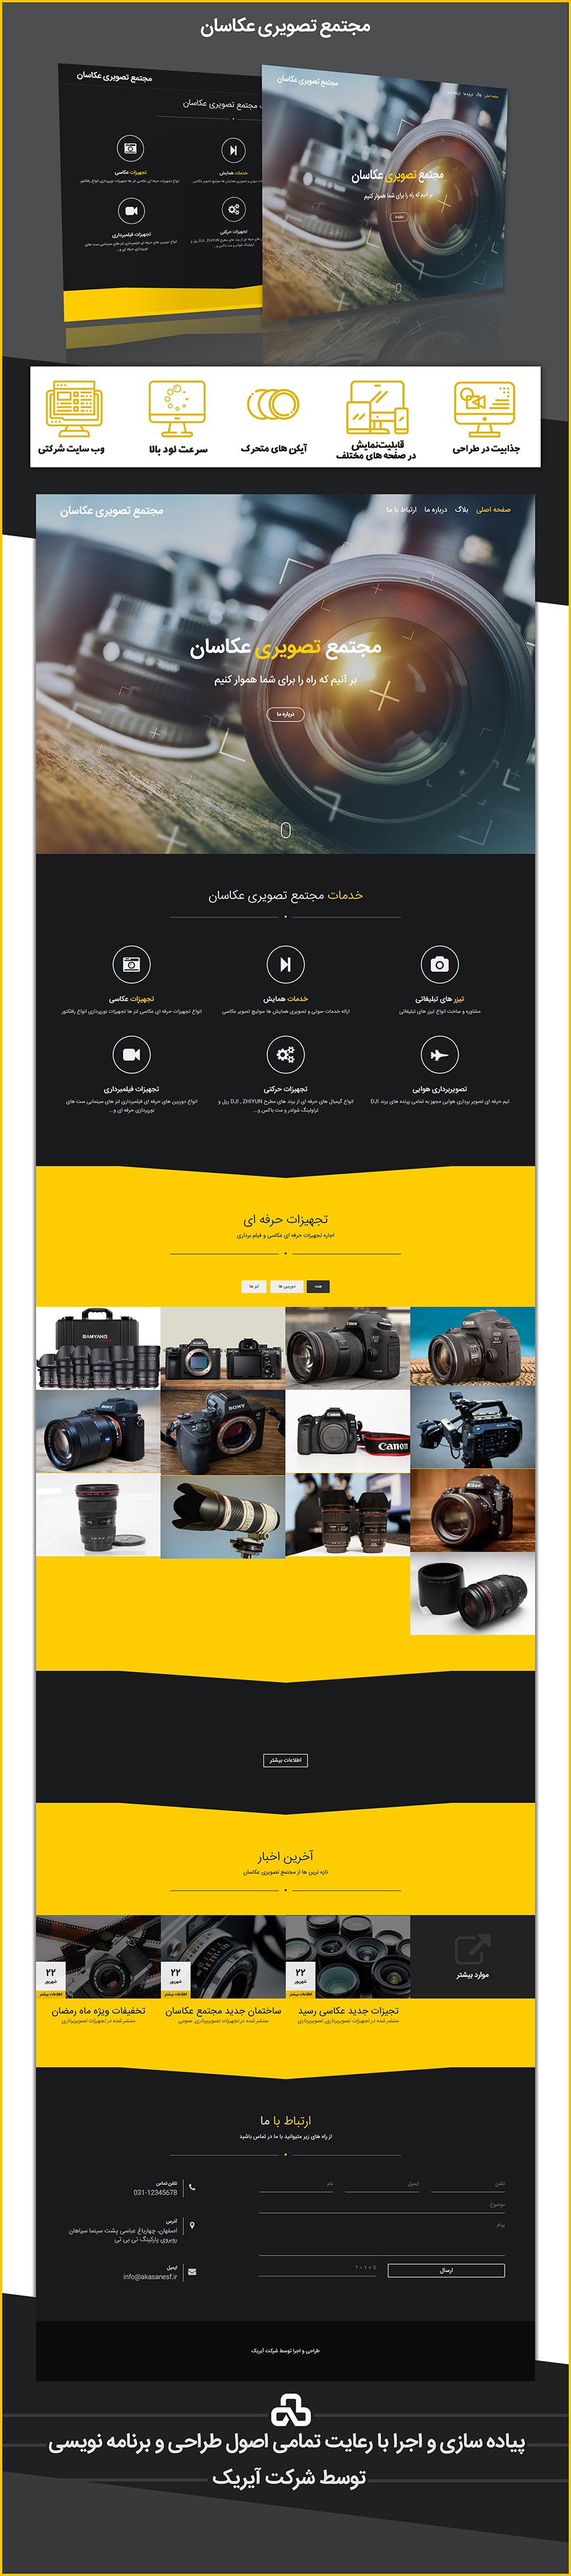 طرح پیش نمایش وب سایت مجتمع تصویری عکاسان